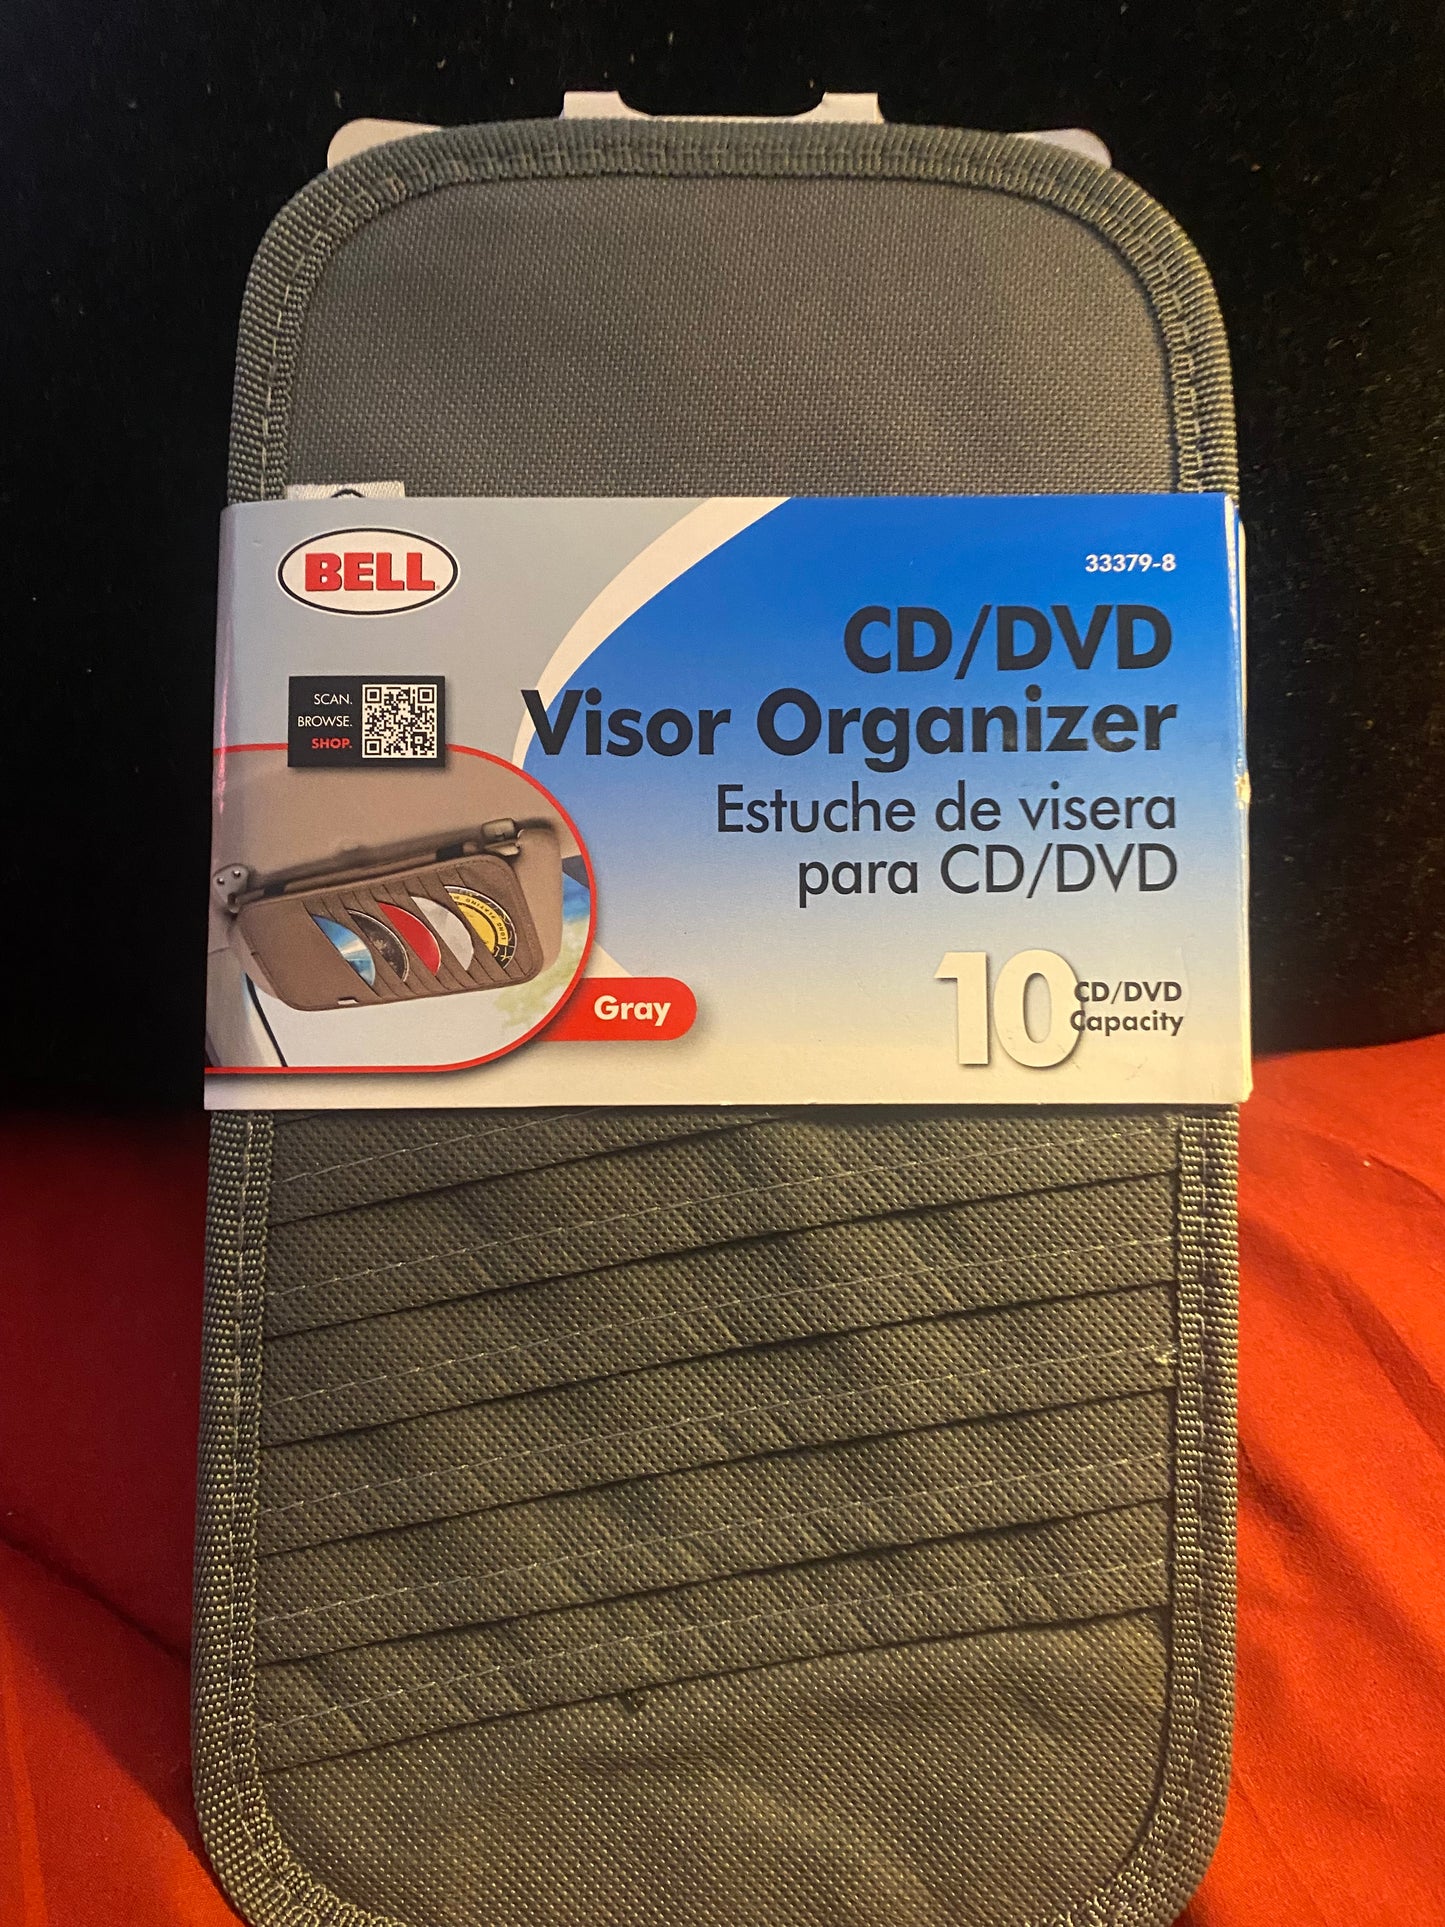 Bell CD/DVD Visor Organizer